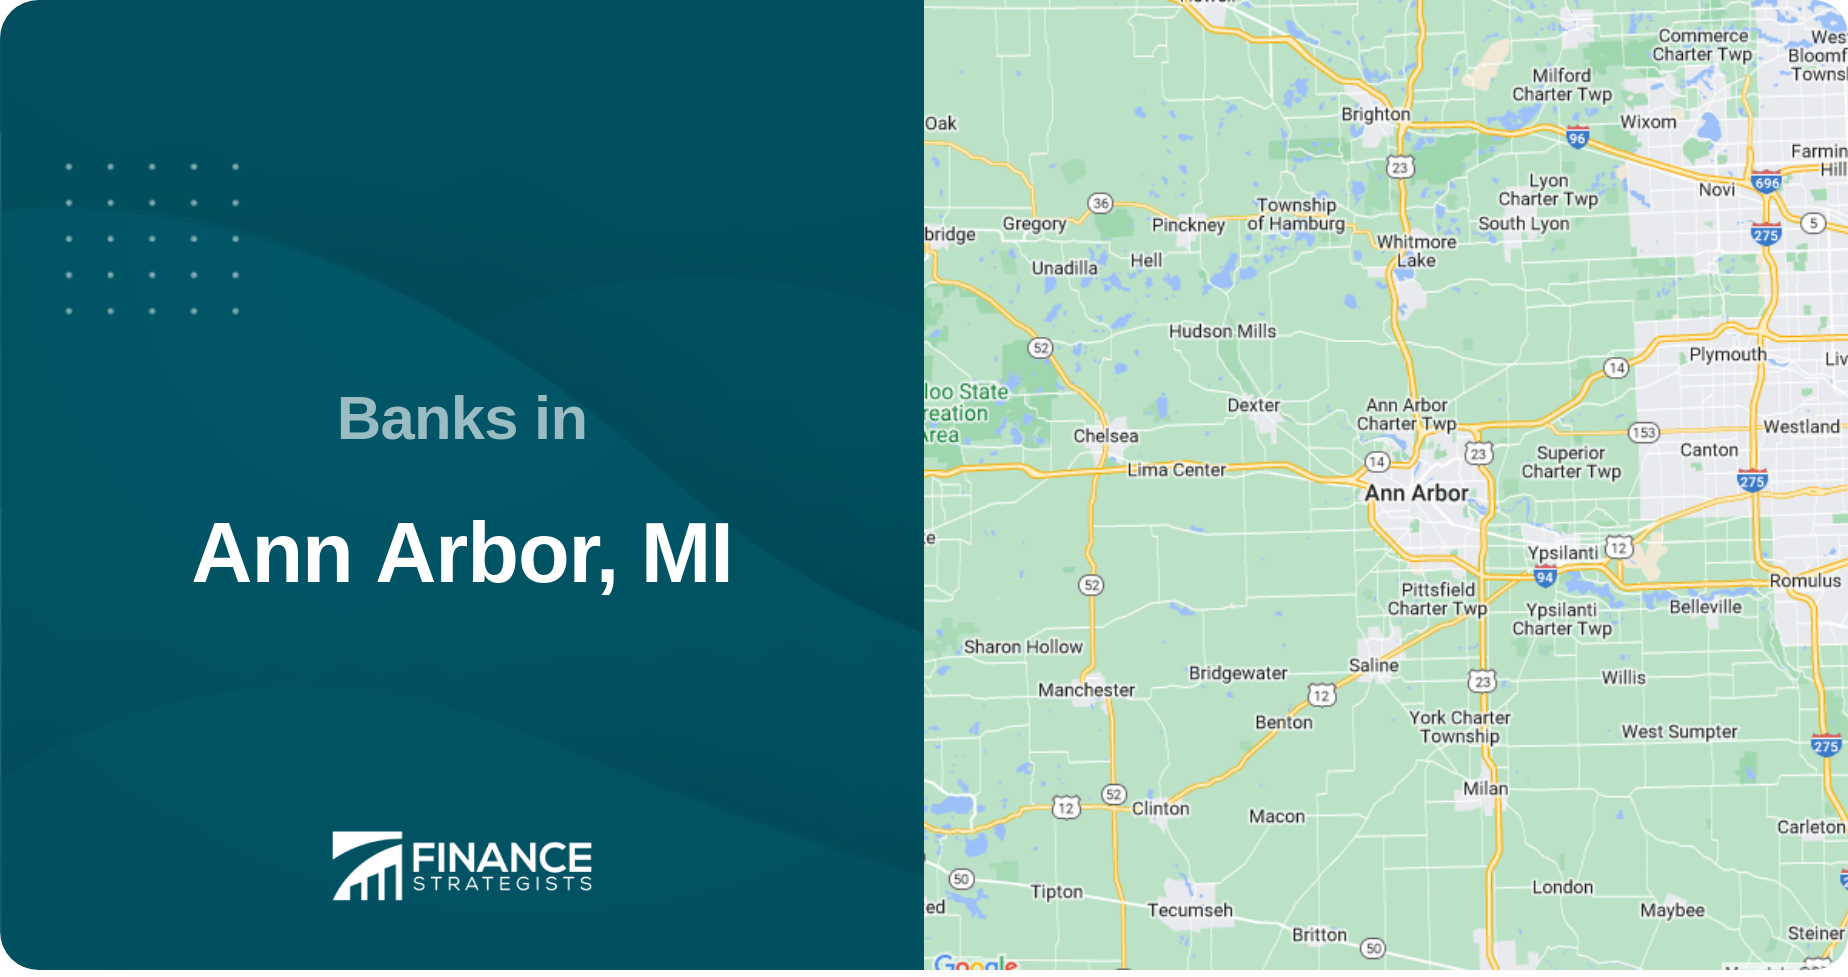 Banks in Ann Arbor, MI